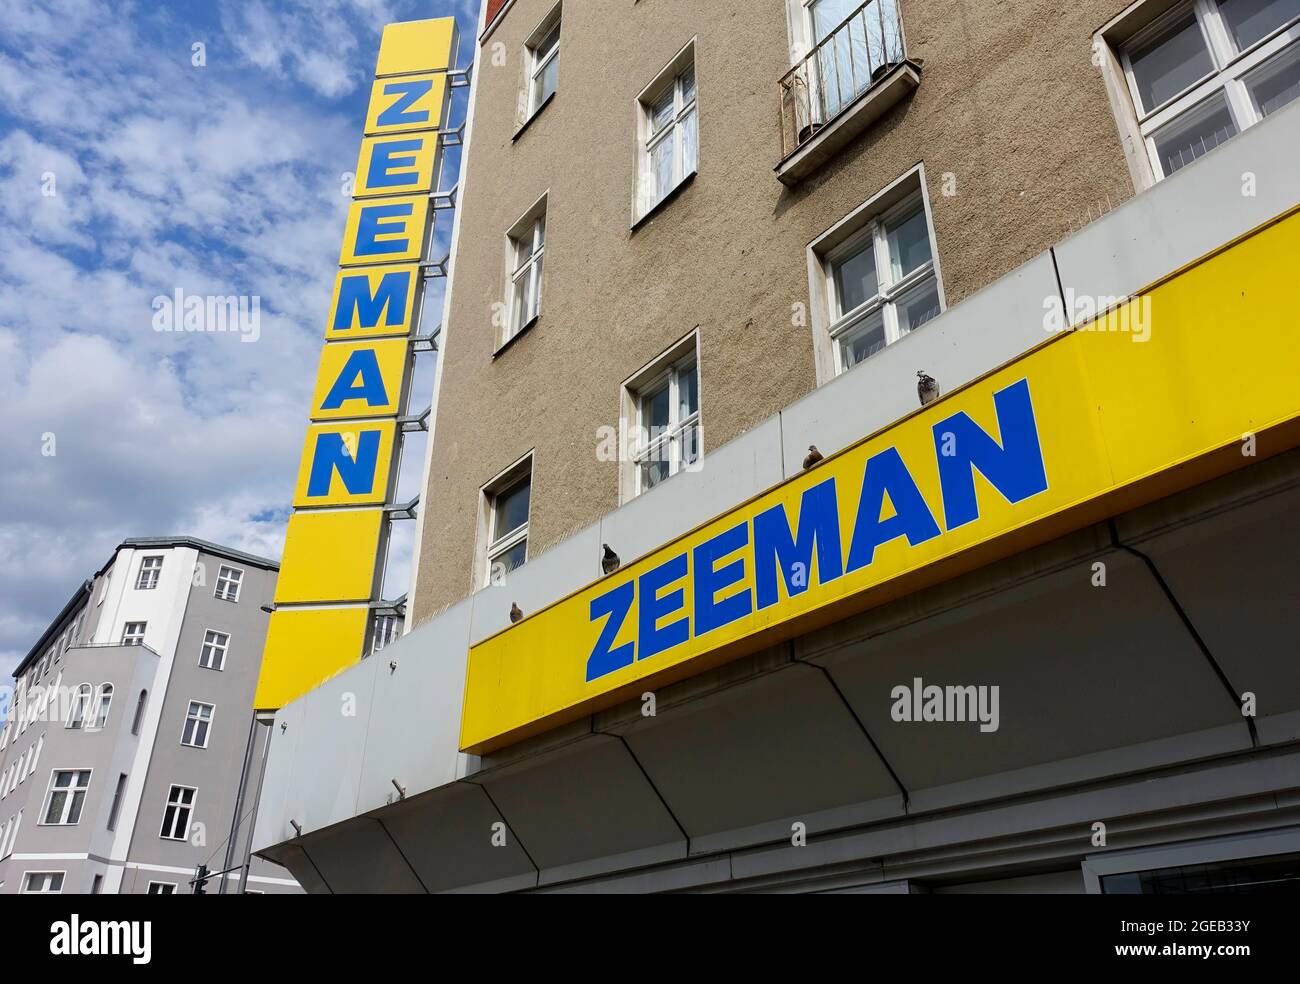 Zeeman, Dutch chain store, Berlin, Germany Stock Photo - Alamy